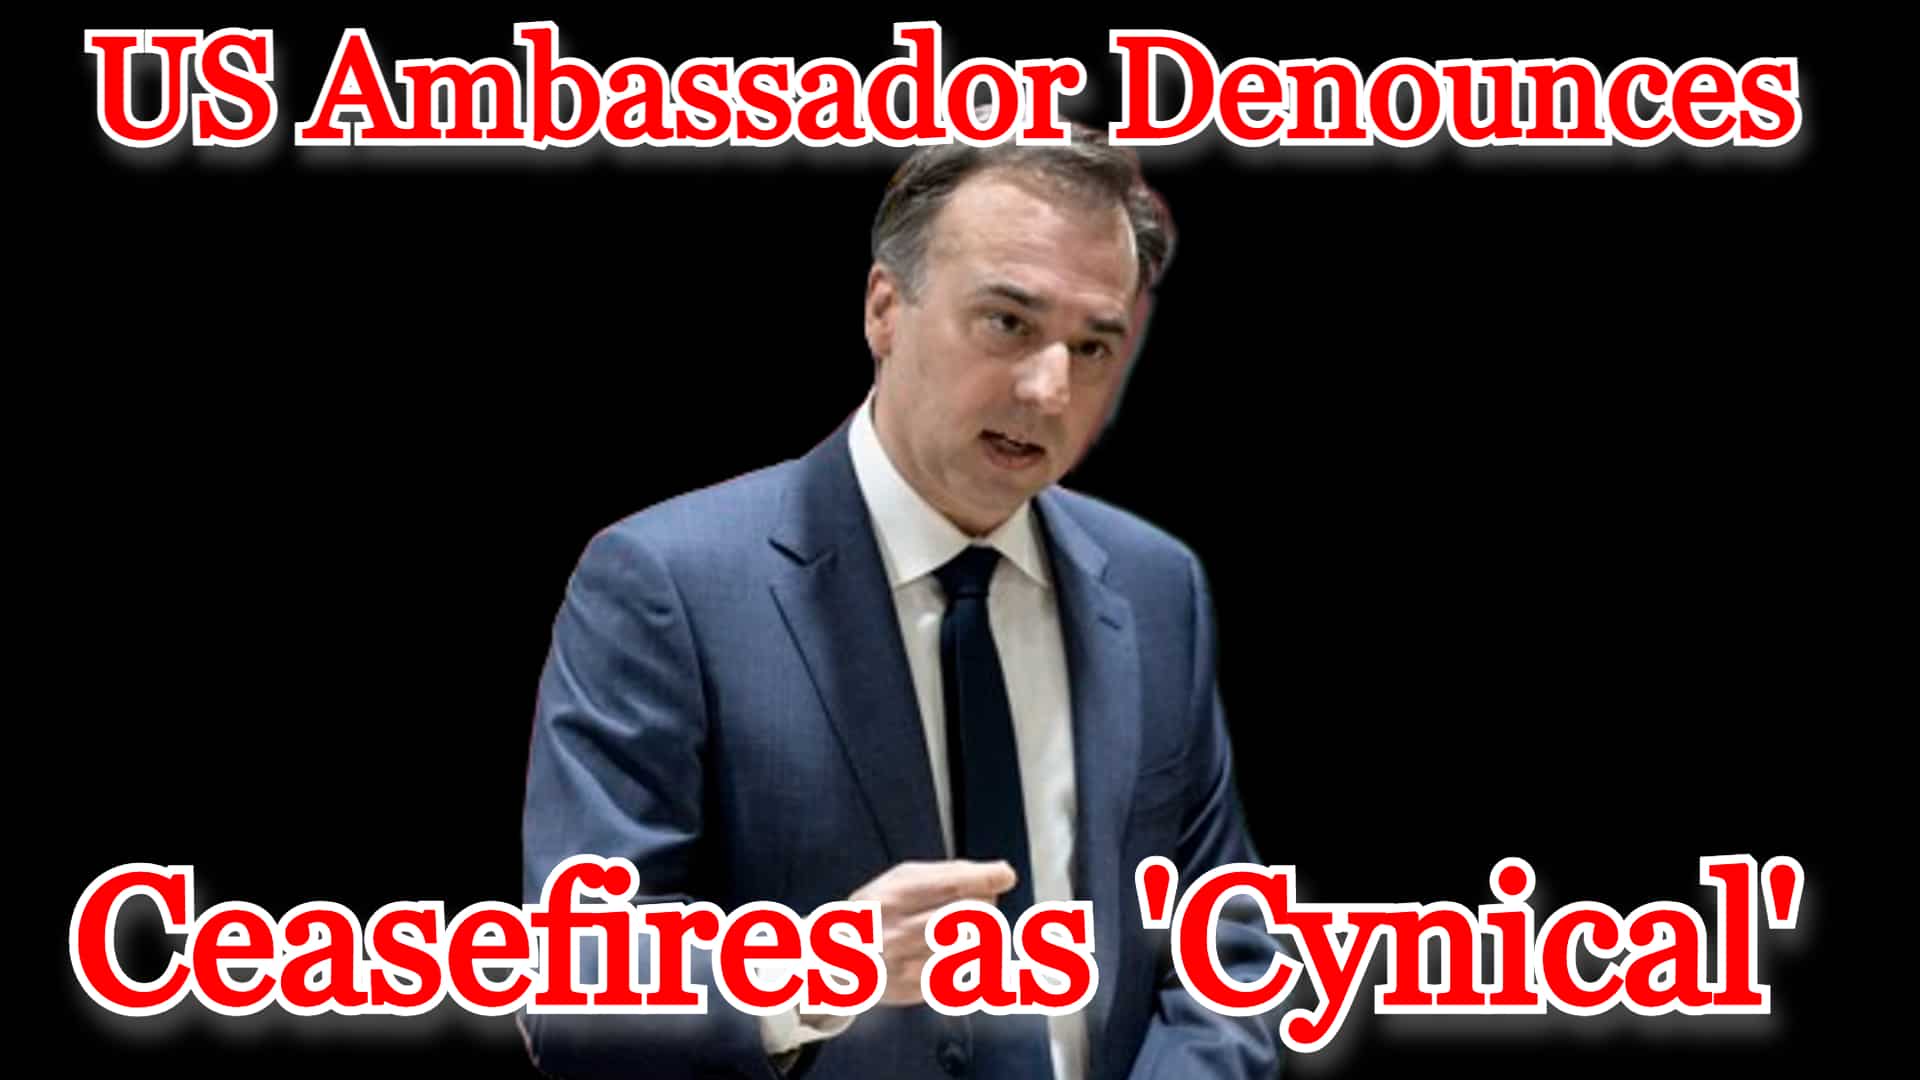 COI #414 US Ambassador Denounces Ceasefires as ‘Cynical’